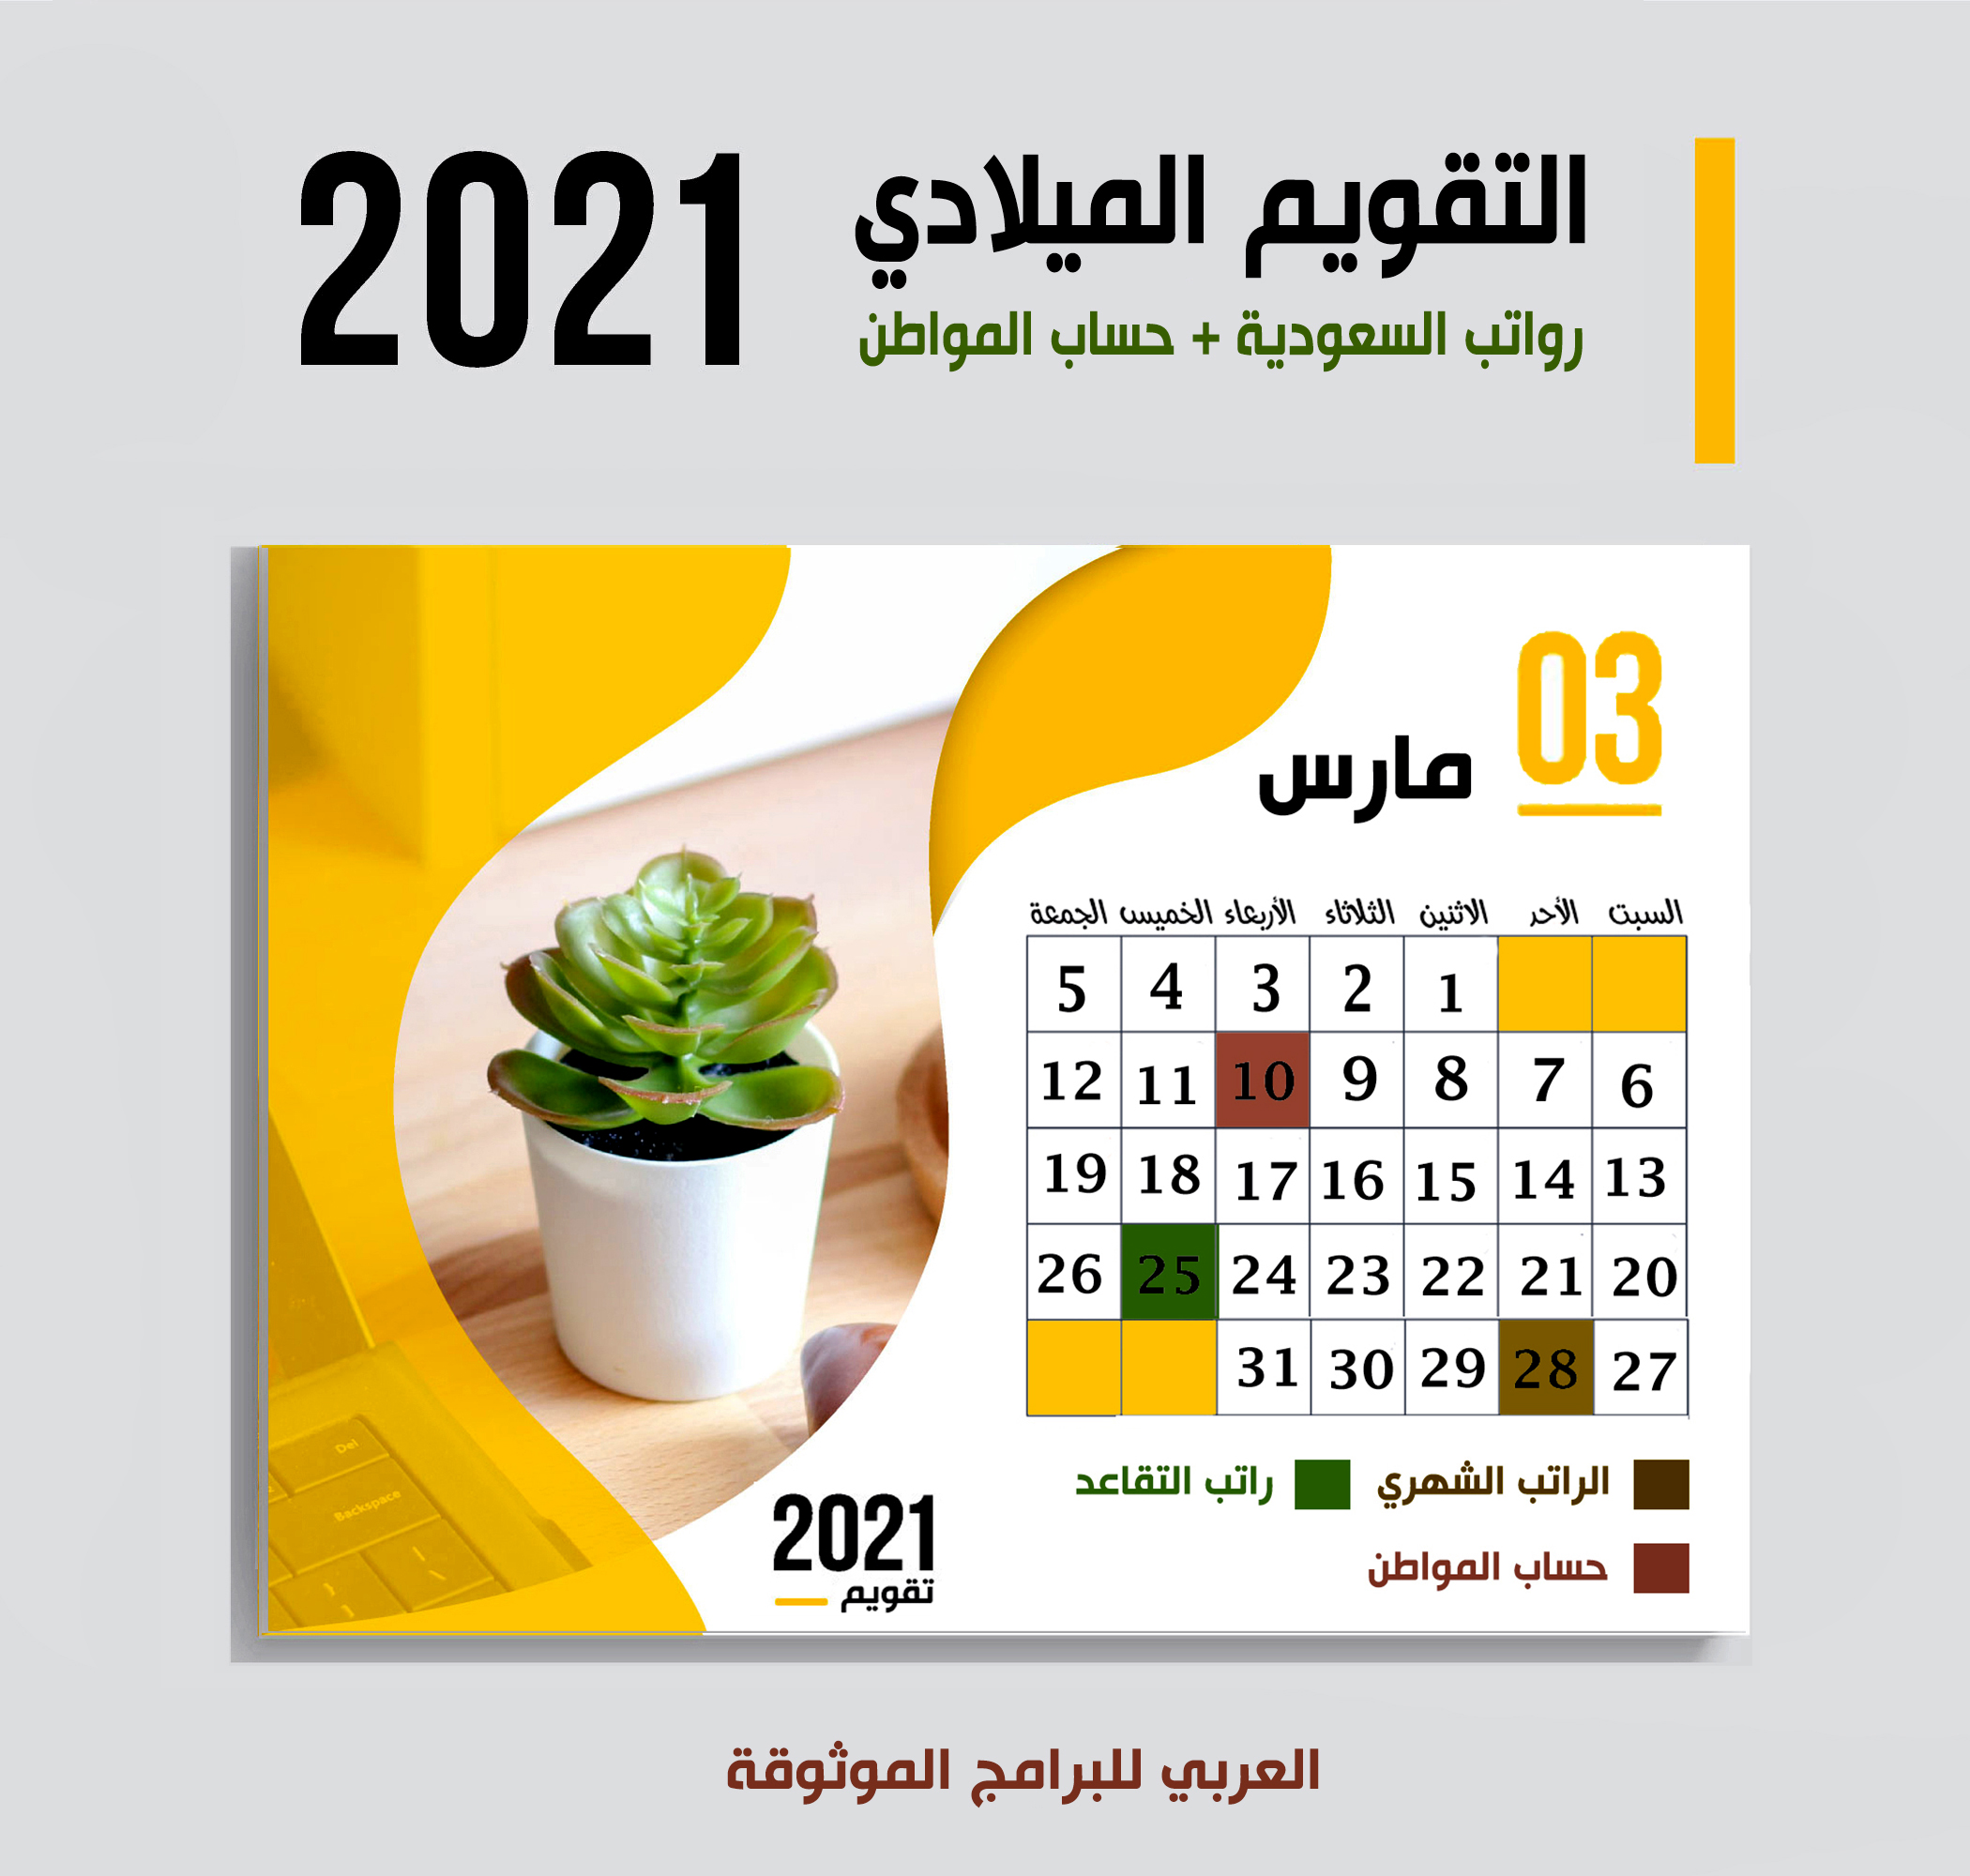 موعد صرف رواتب السعودية وحساب المواطن وصرف رواتب المتقاعدين لشهر مارس 2021